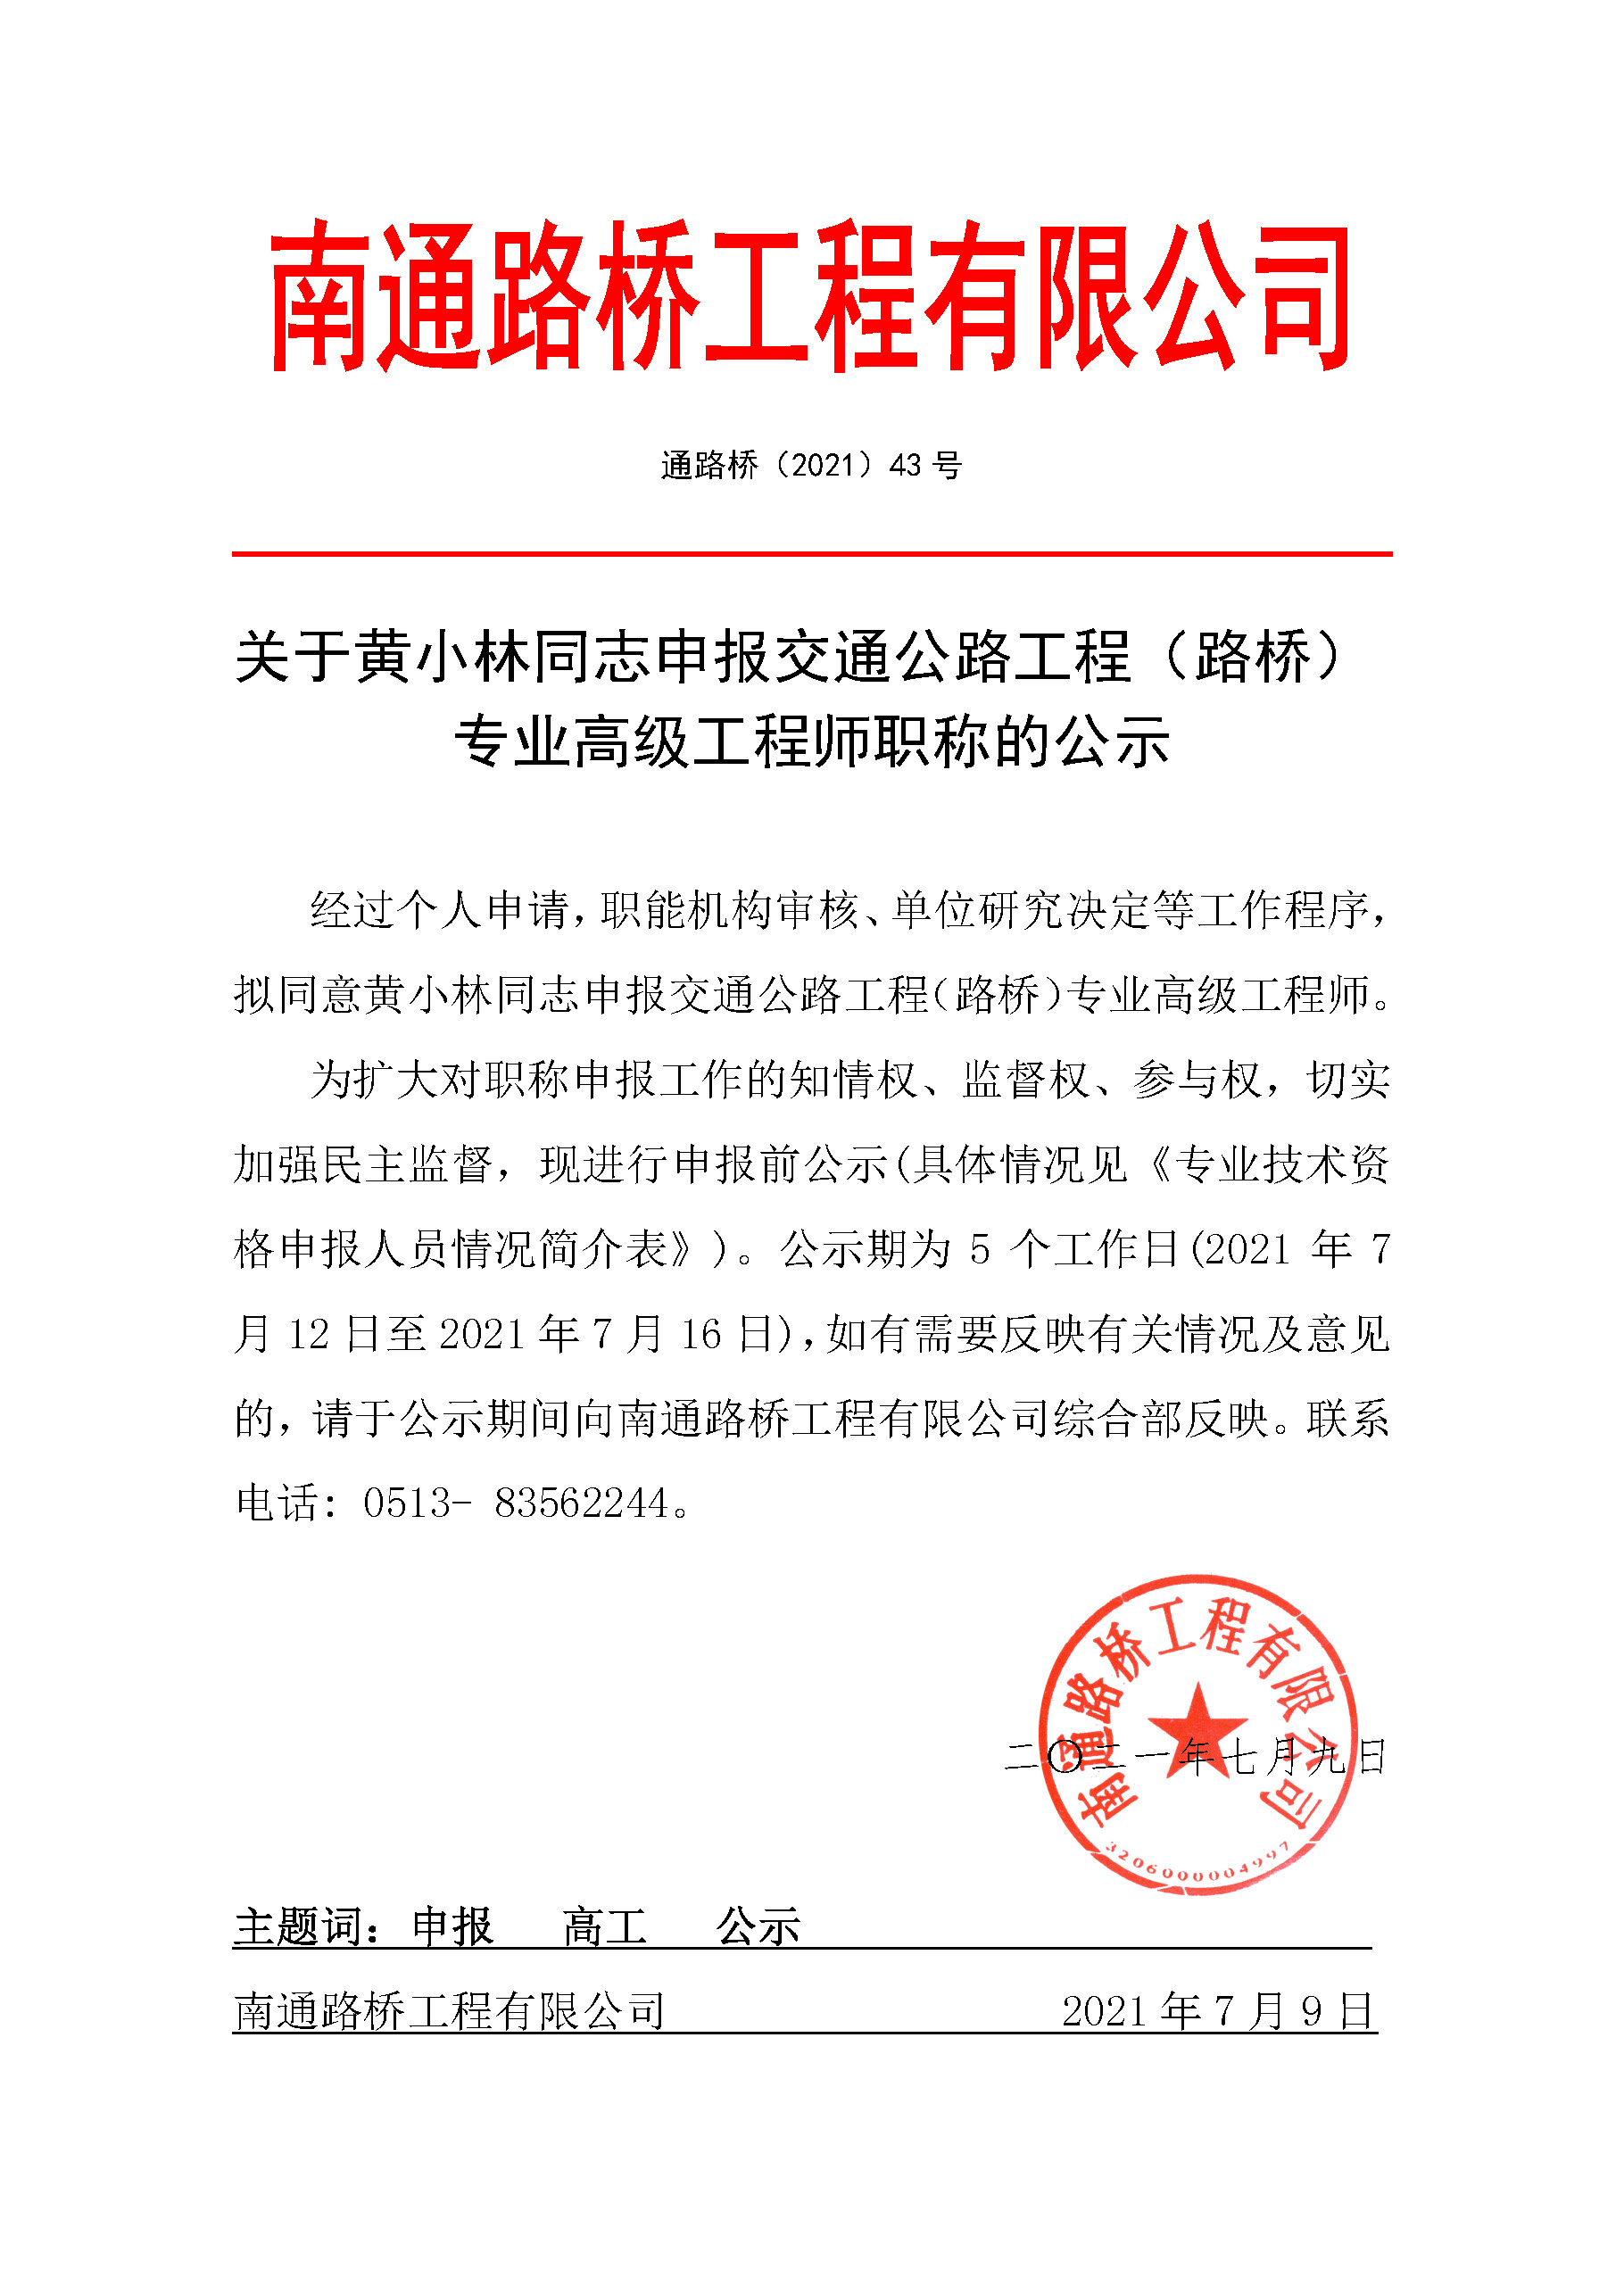 关于黄小林同志申报交通公路◎工程（路桥） 专业高级工程师职称的公示